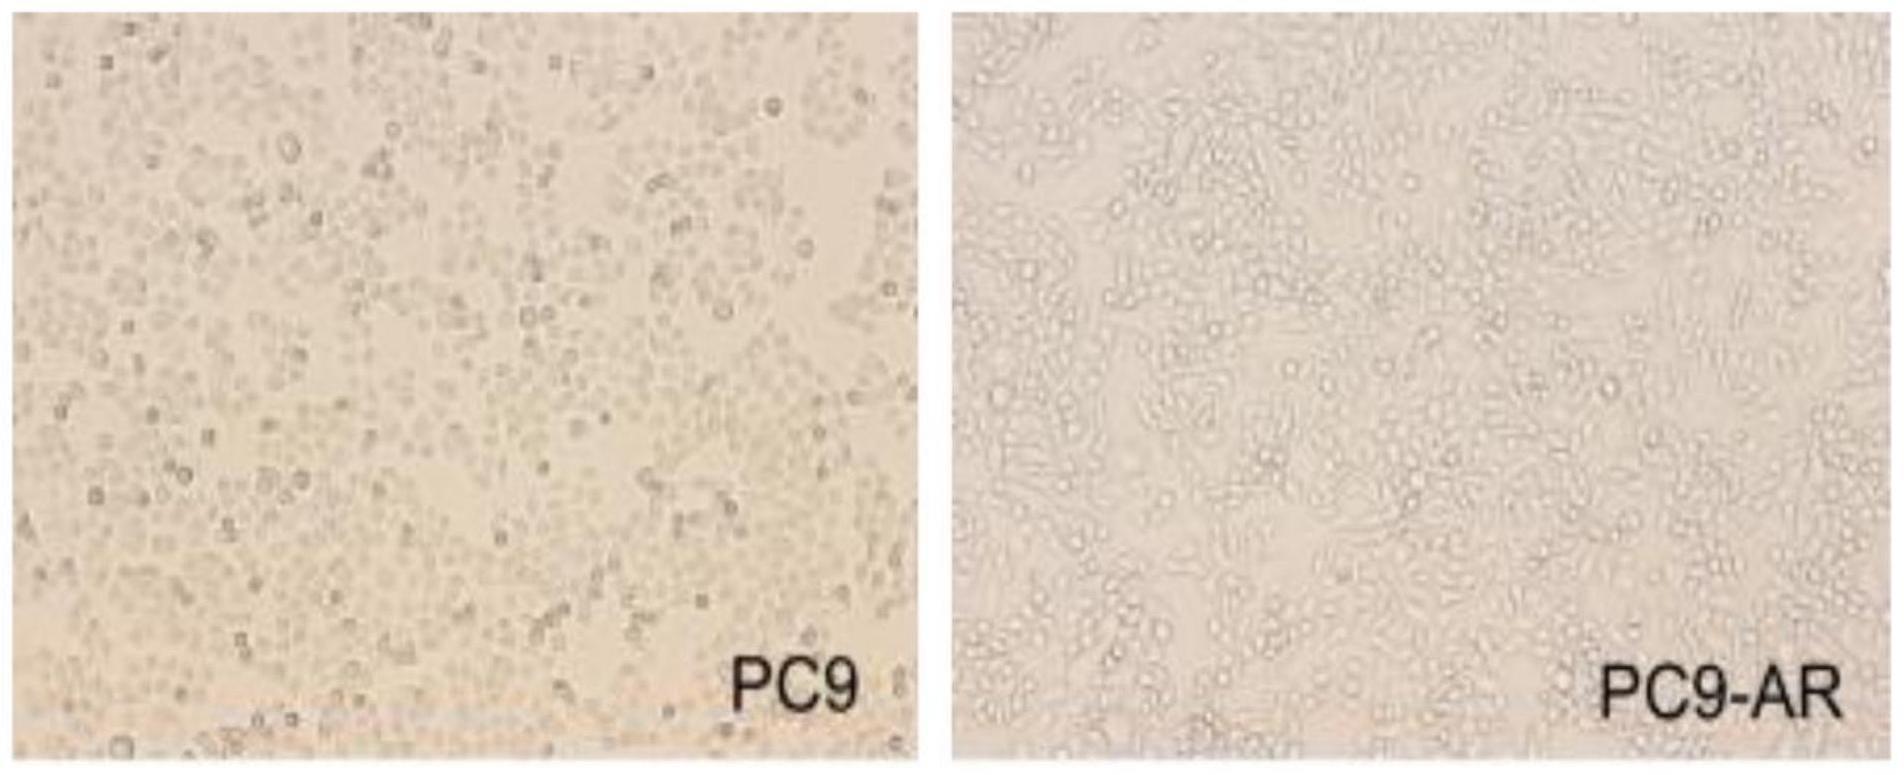 耐阿美替尼人肺腺癌细胞株PC9-AR及其应用的制作方法